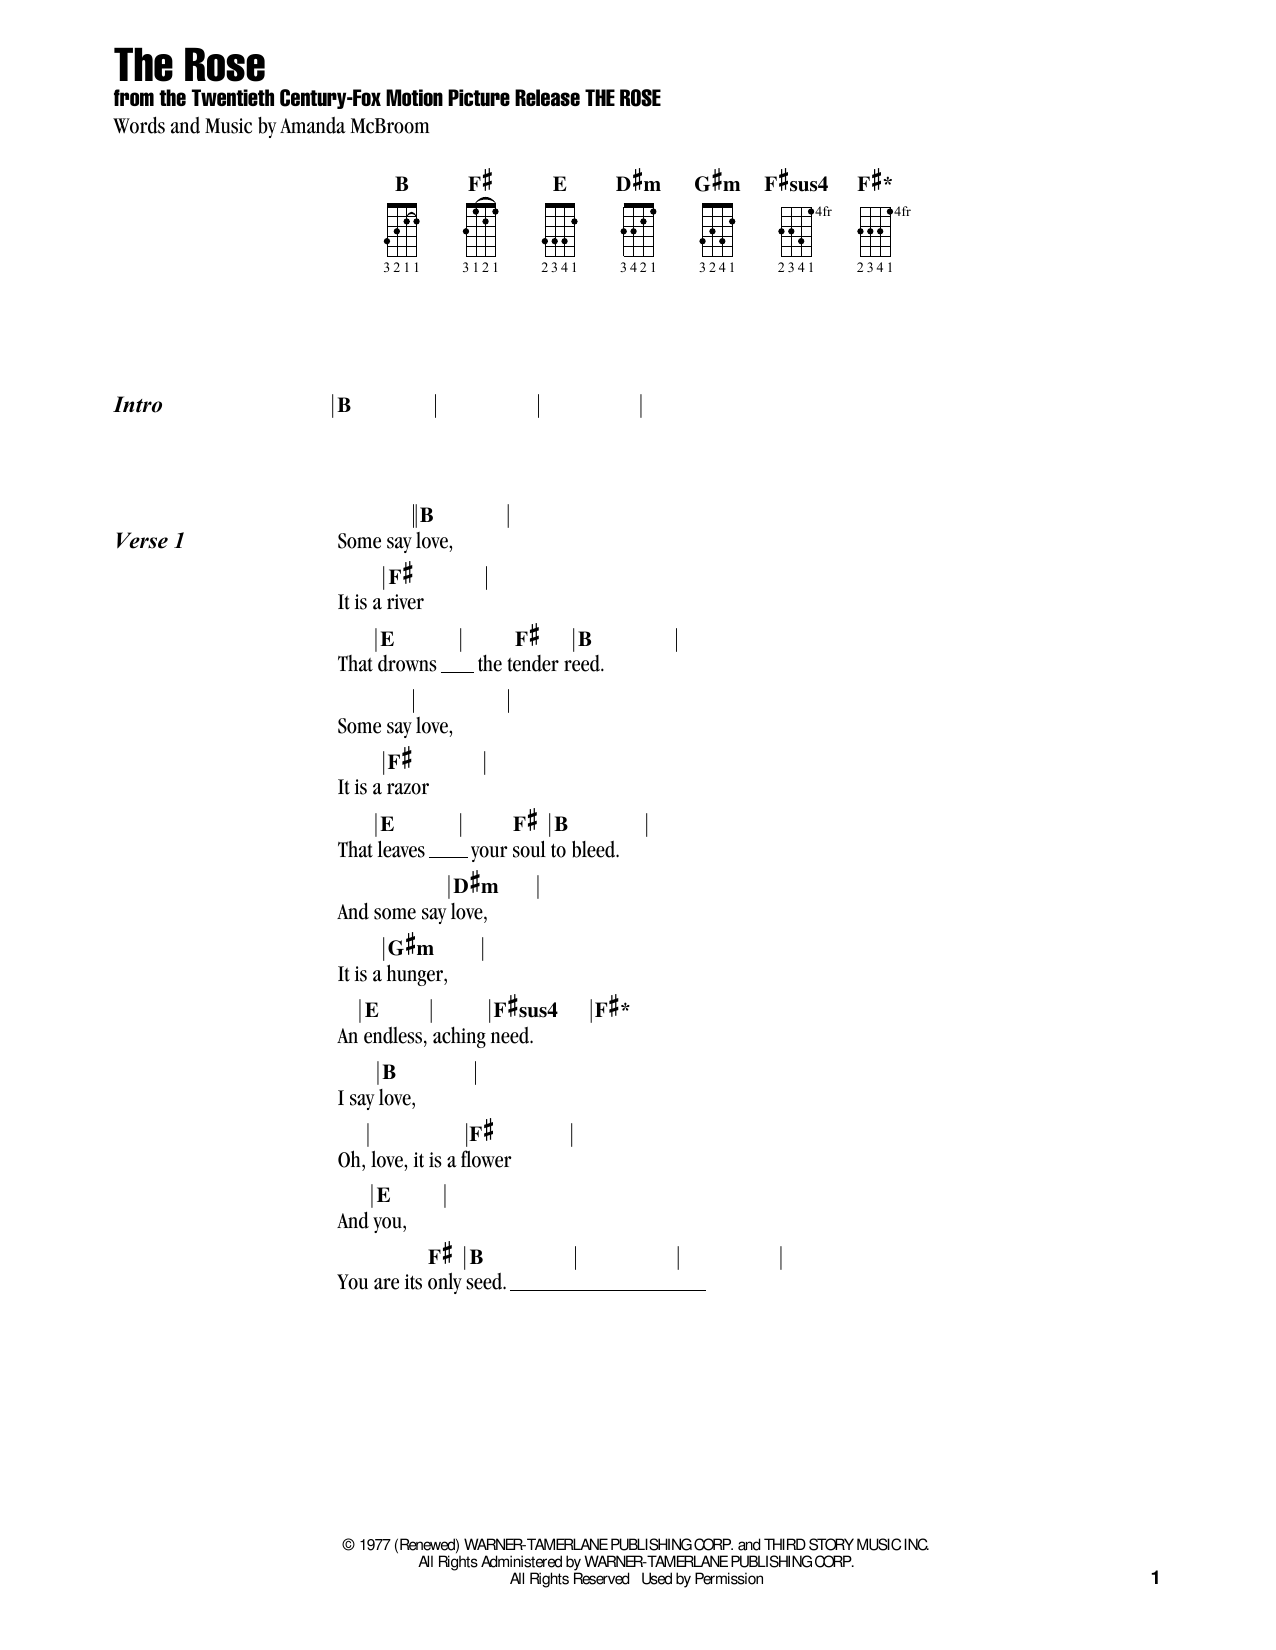 Jake Shimabukuro The Rose (feat. Bette Midler) Sheet Music Notes & Chords for Ukulele - Download or Print PDF